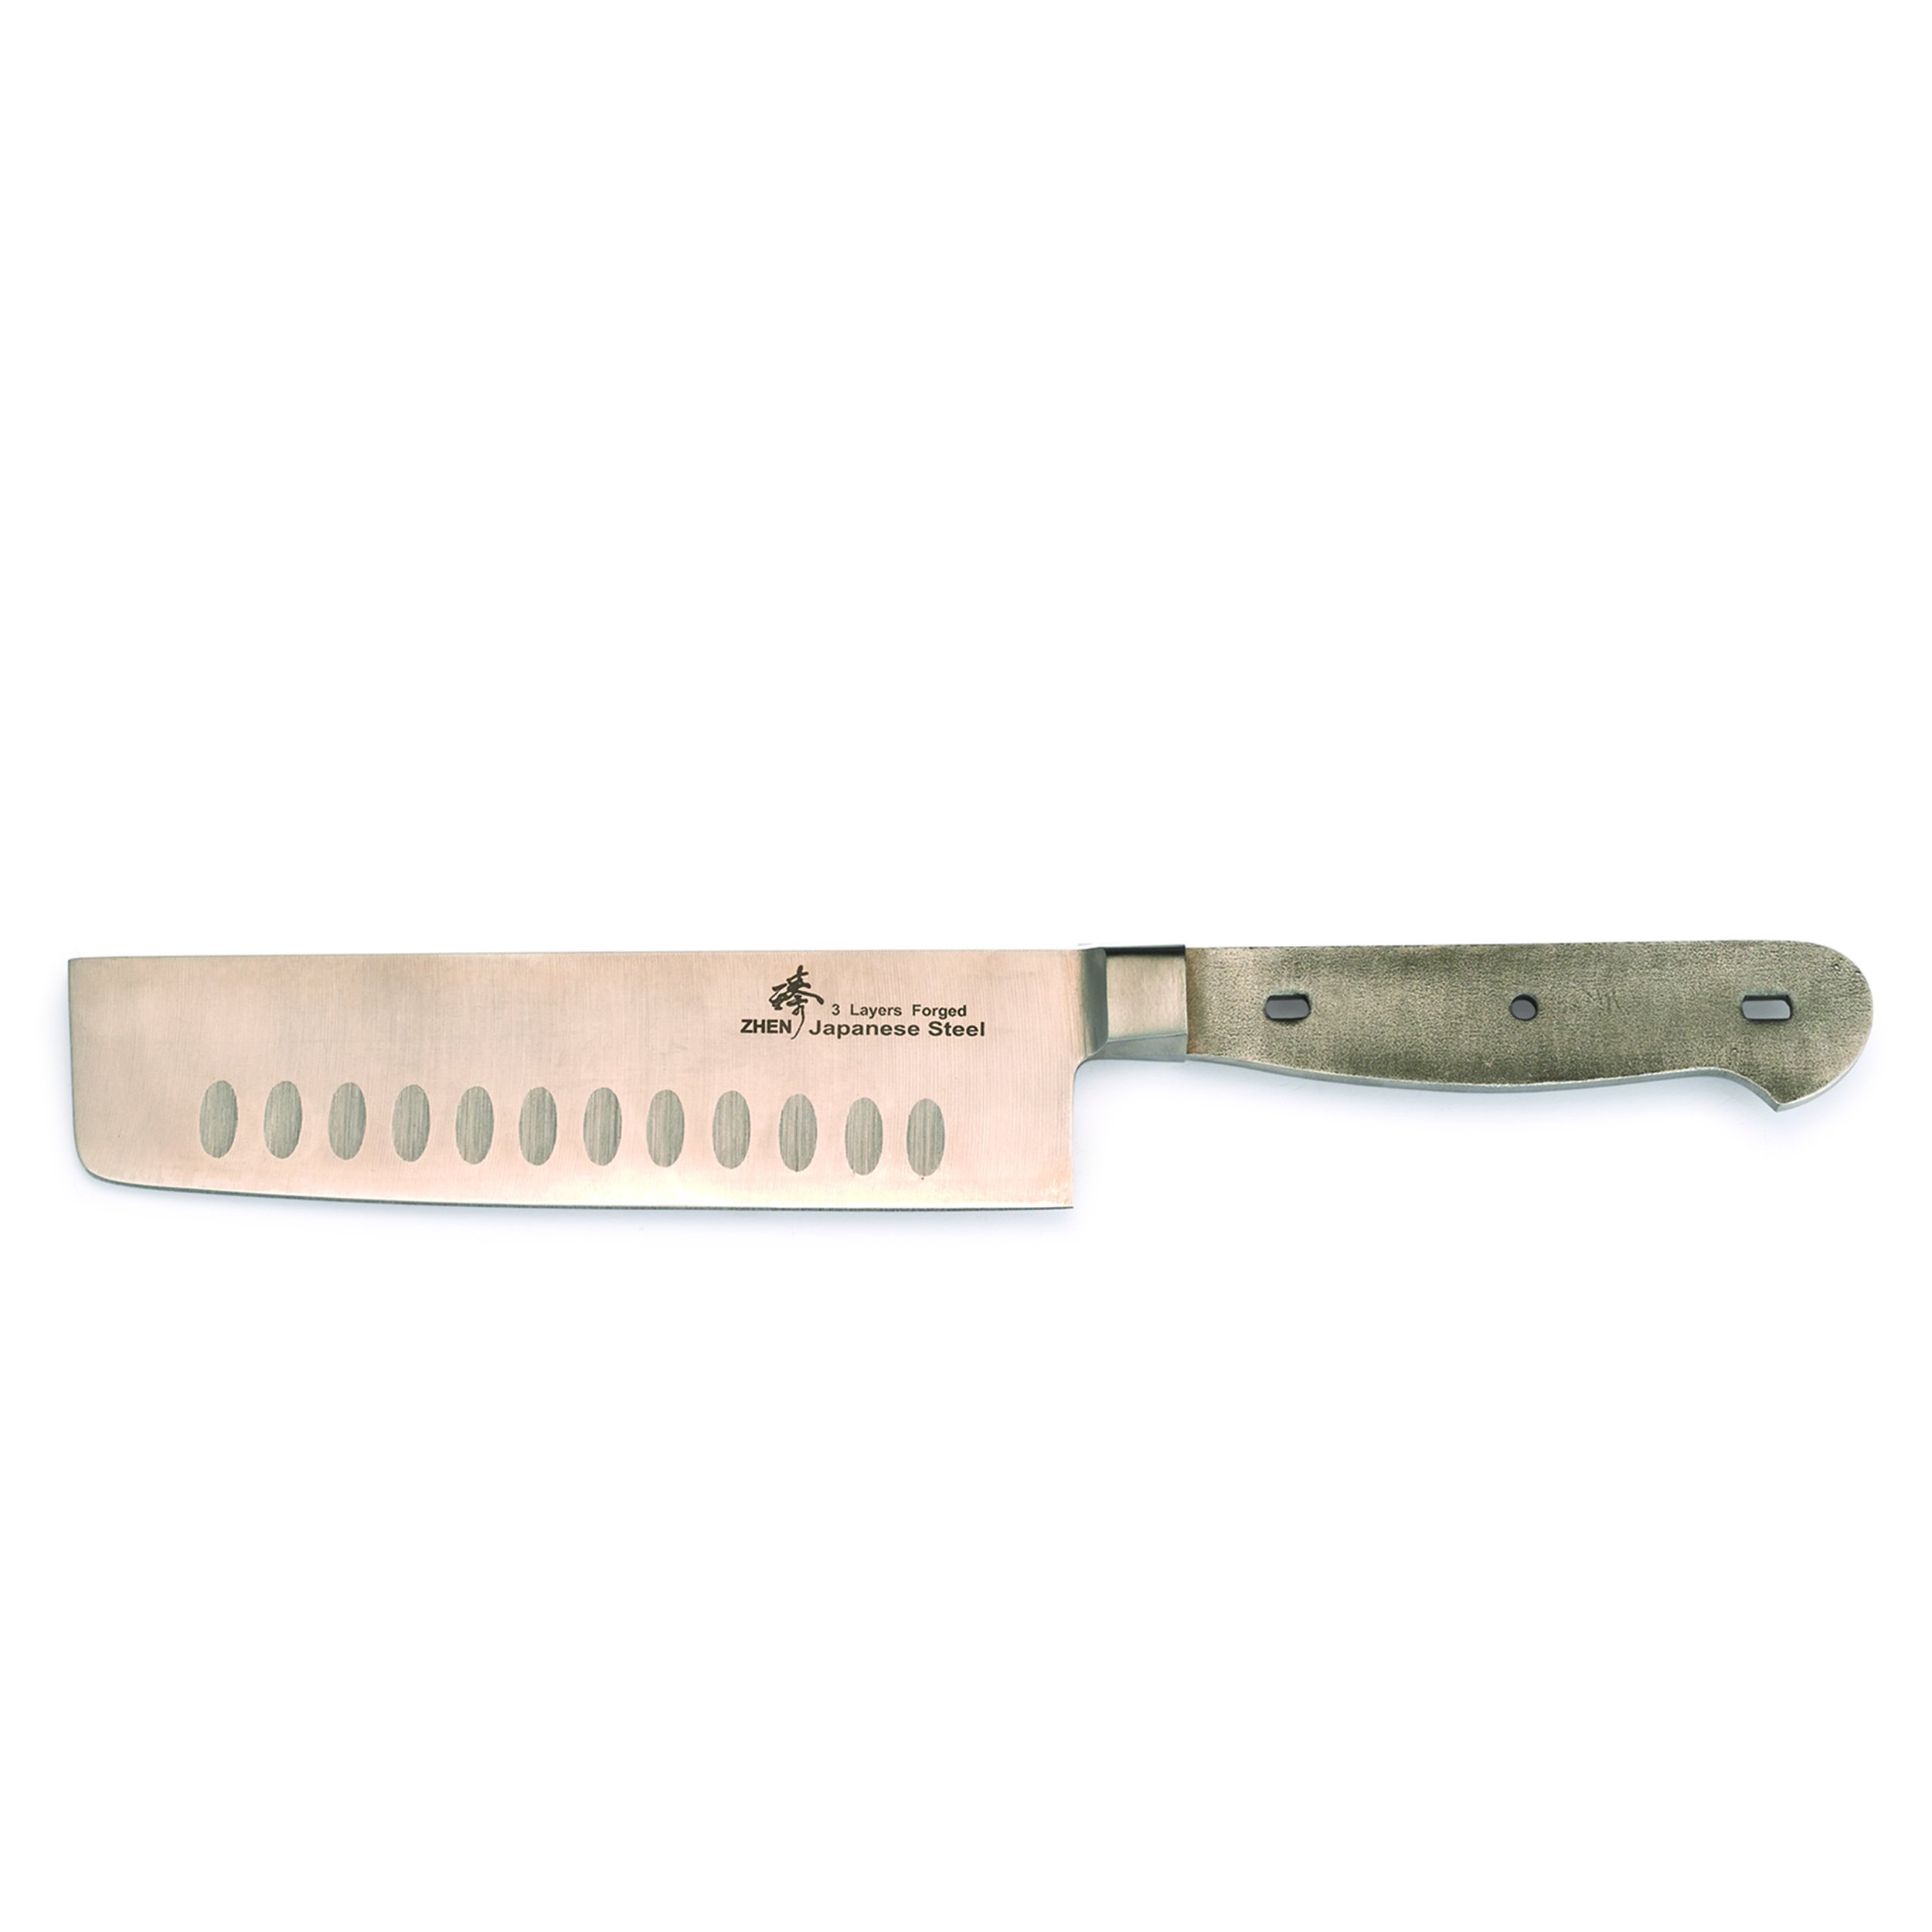 Nakiri Aus 10 3-layer Knife Blank 6-5/8" L X 5/64" T (170mm X 1.8mm)